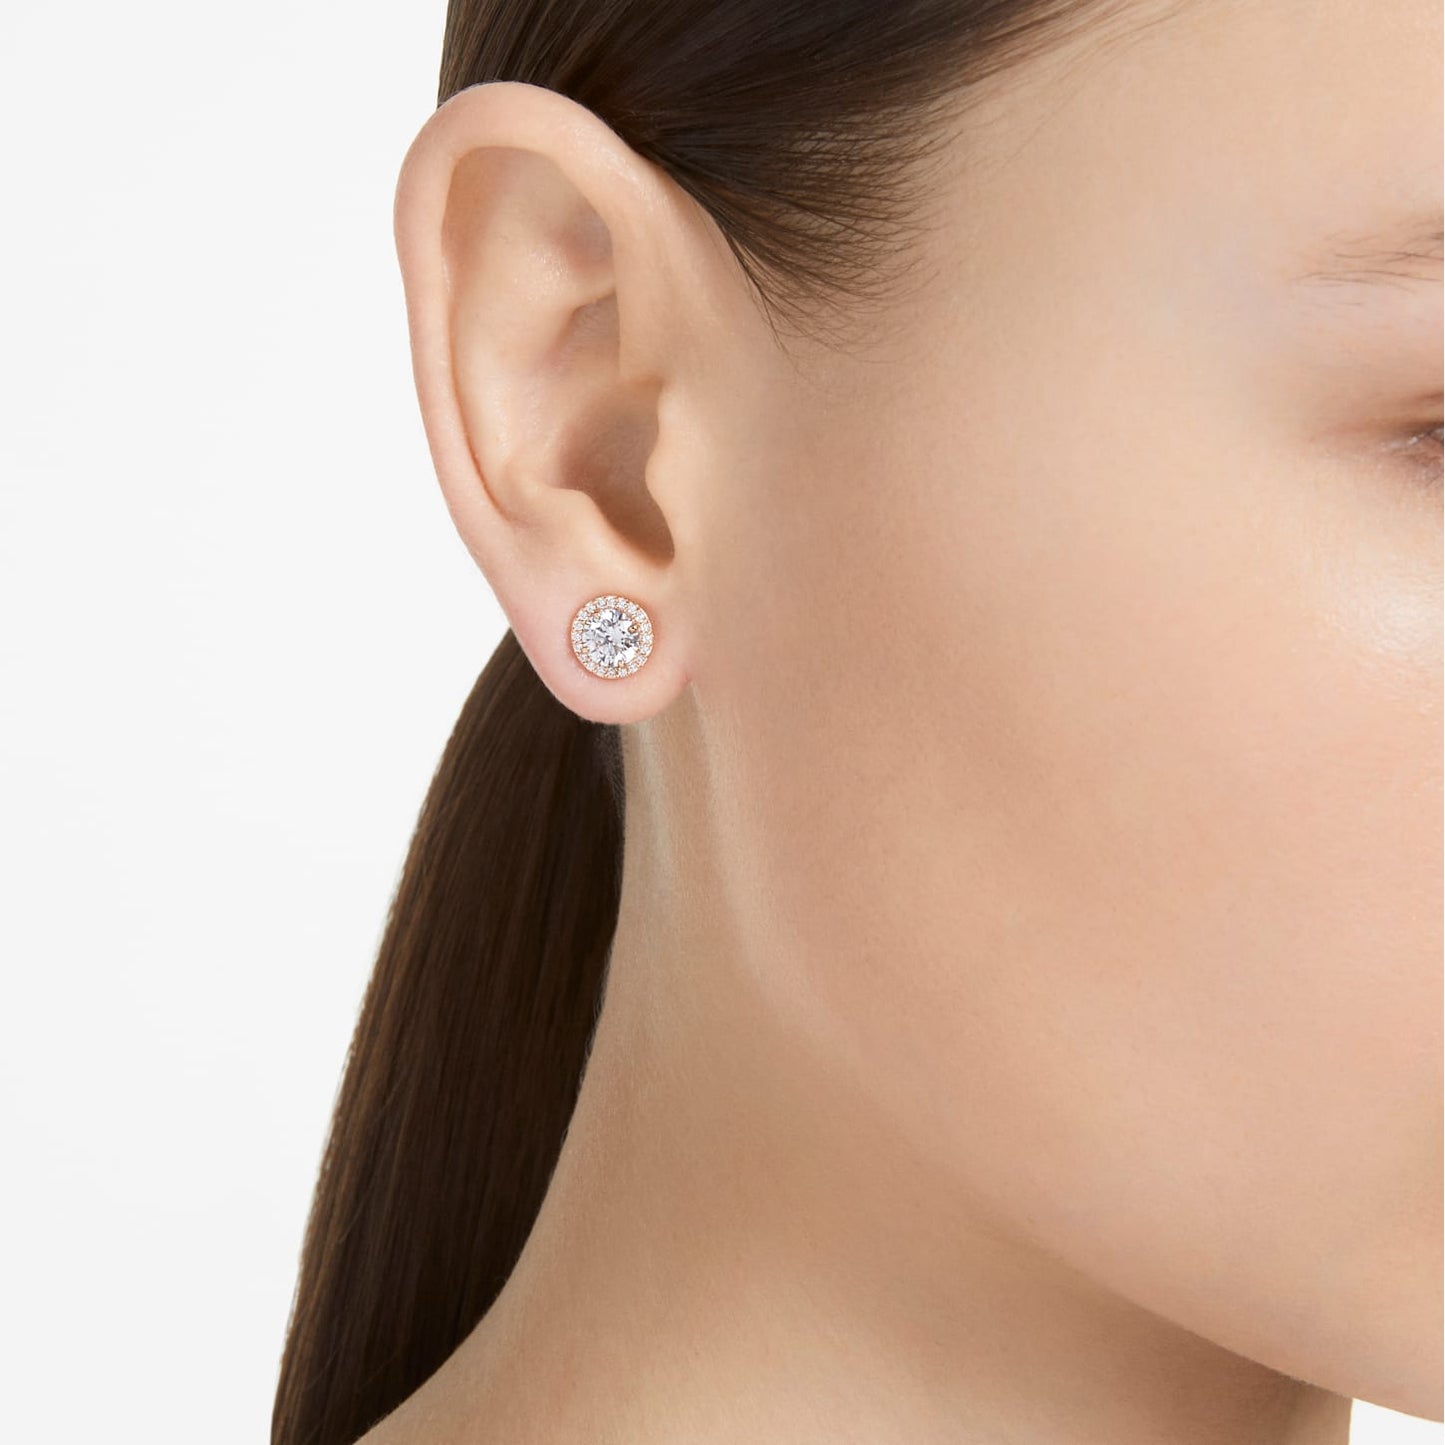 Constella - White Rose Gold - Pavé - Stud earrings - Swarovski